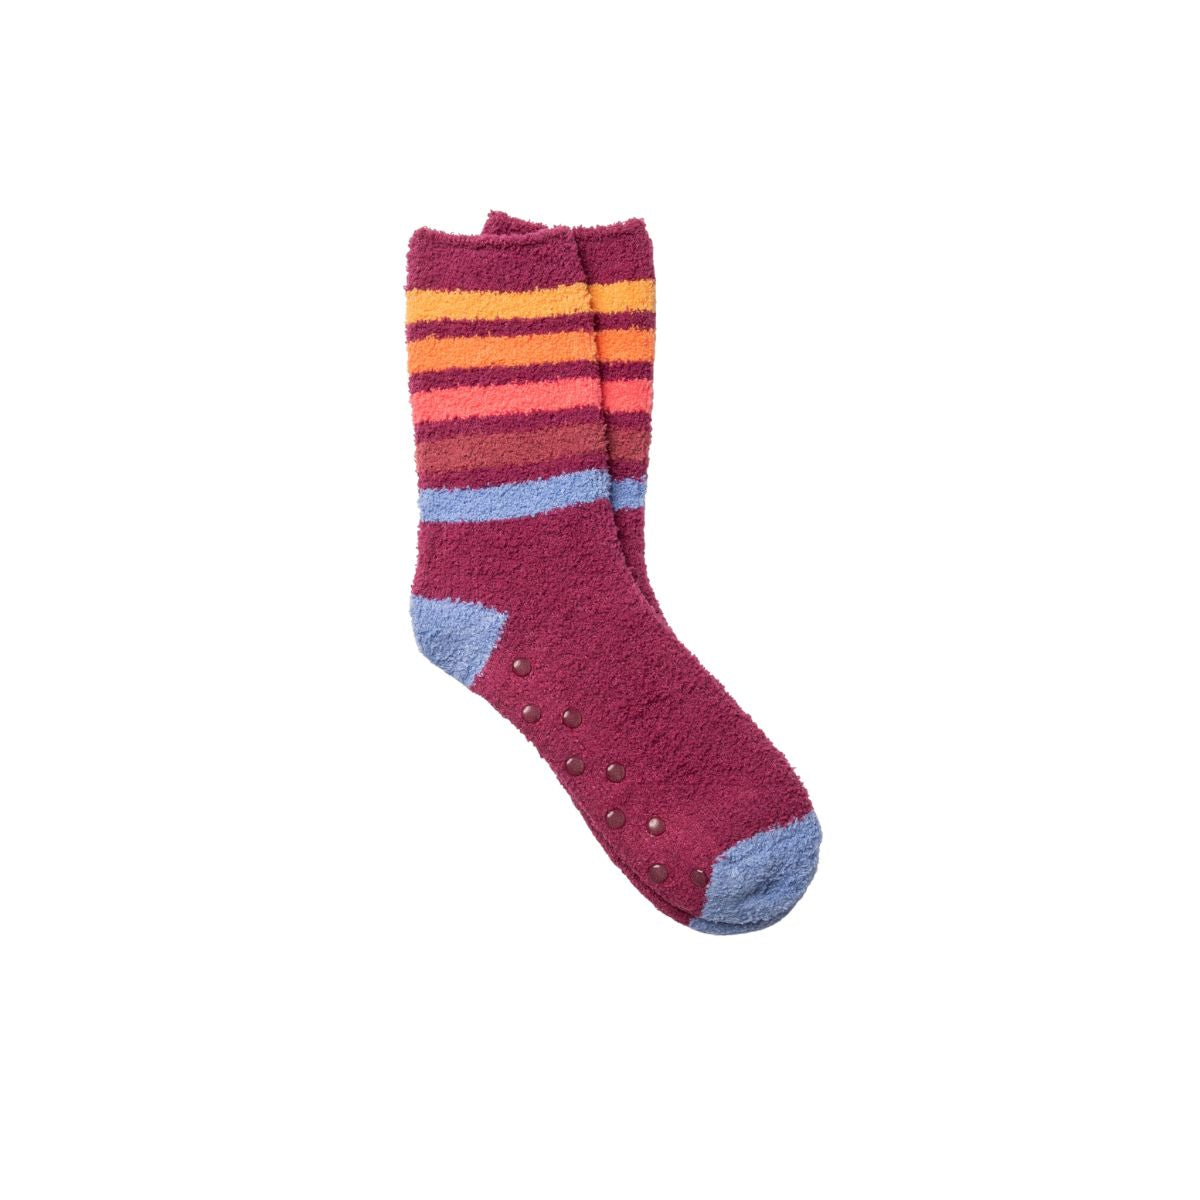 PJ Salvage Fun Socks in Raspberry